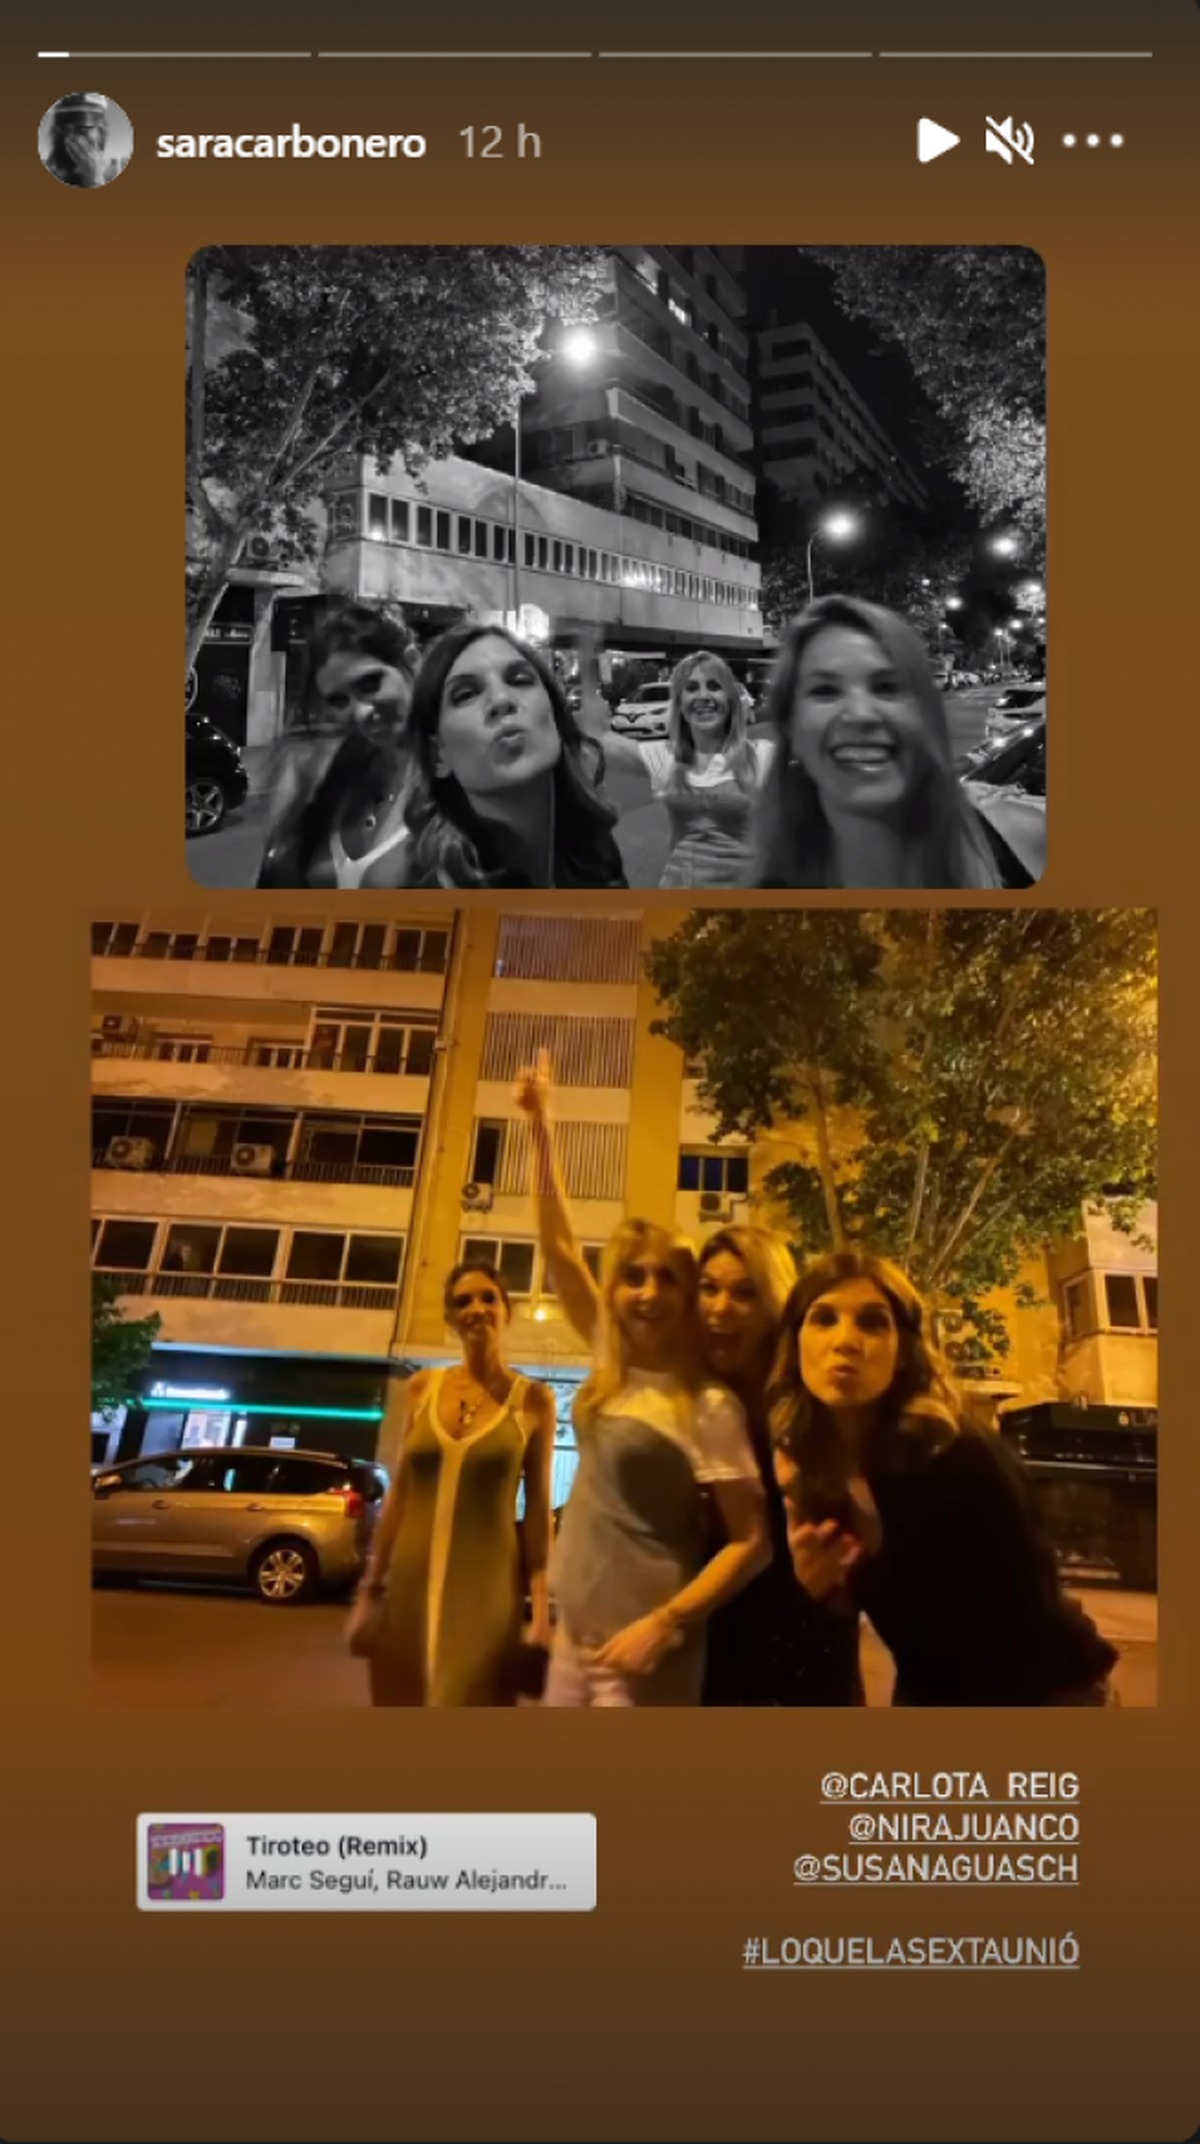 Sara Carbonero se reúne con sus ex compañeras de trabajo para disfrutar de una noche en Madrid